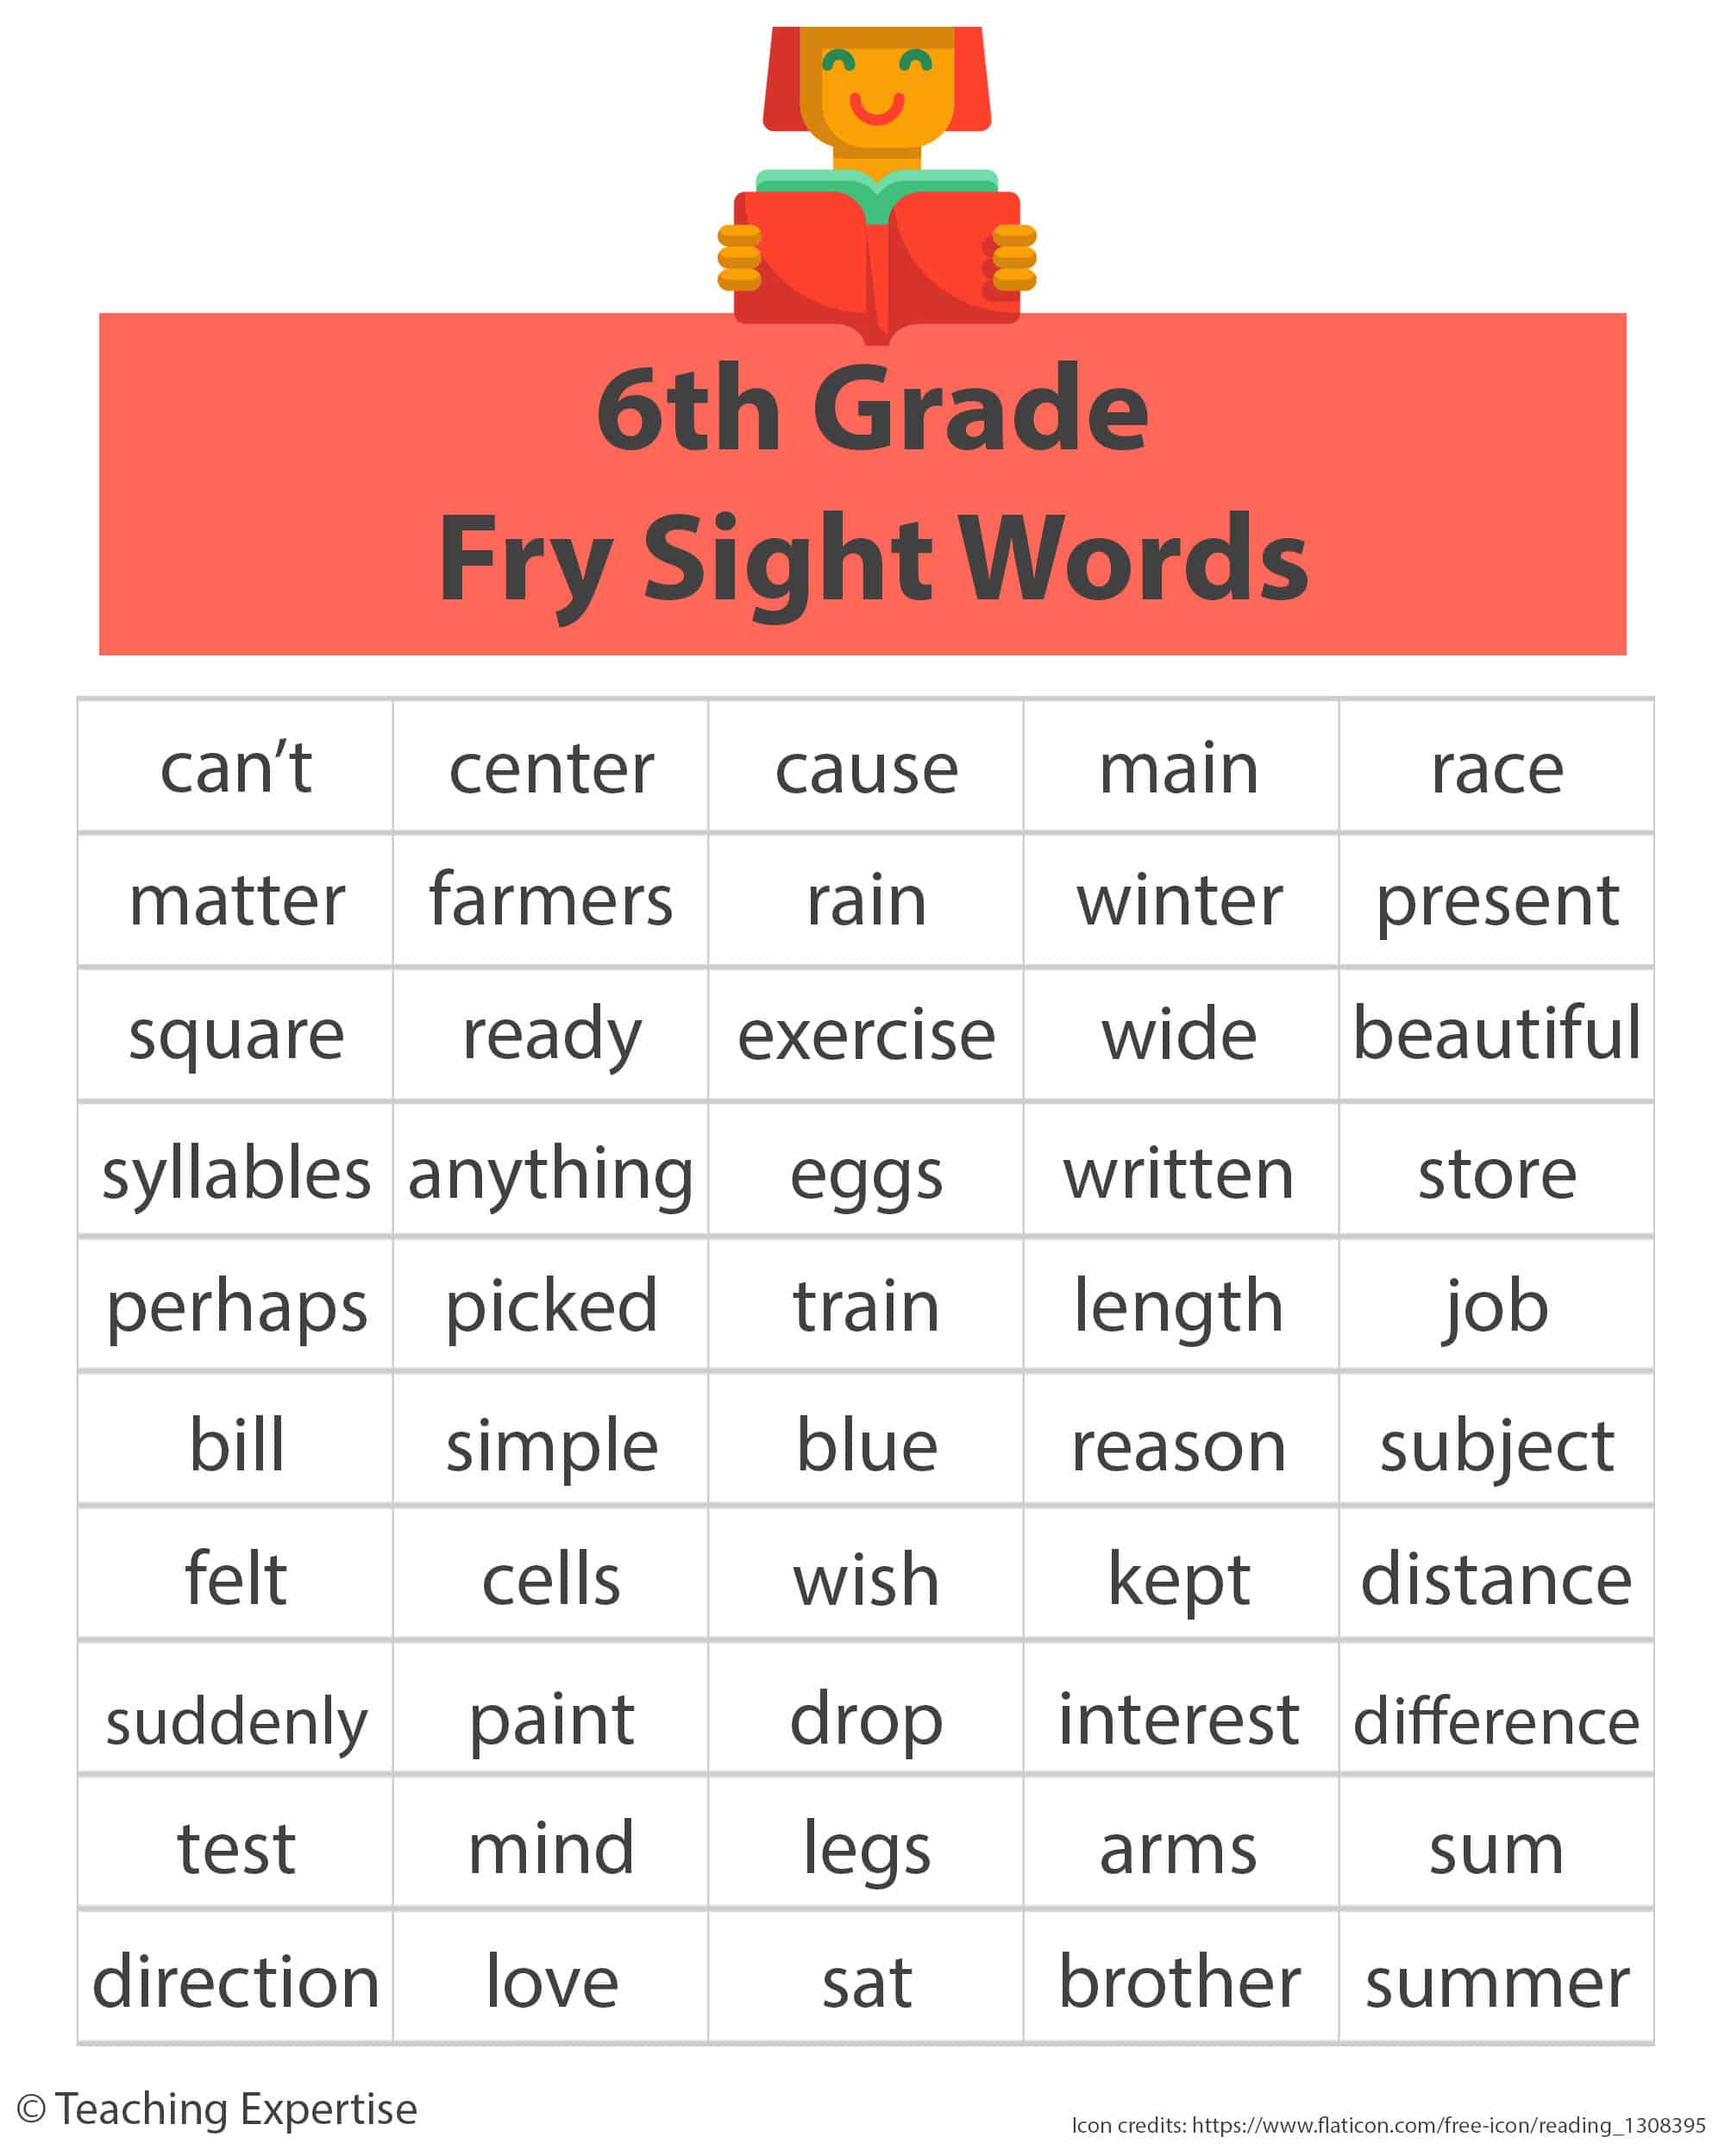 6th grade fry sight words